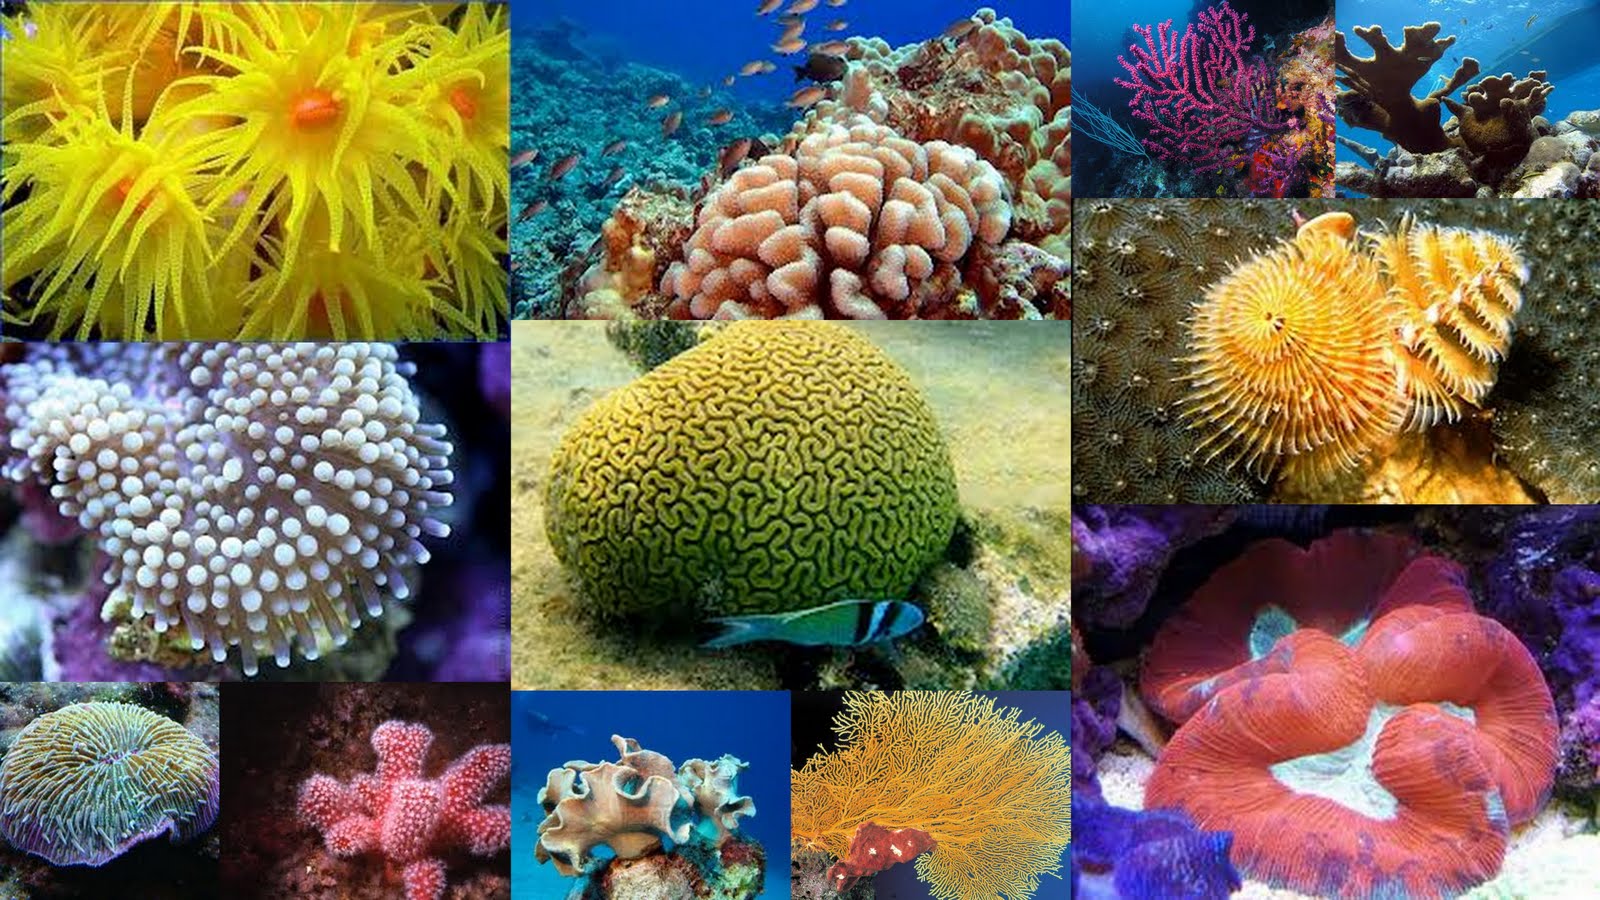 La vitalidad de la inmensa variedad de plantas y animales en los océanos está condicionada por la salud de sus ecosistemas, incluyendo los arrecifes de coral. Foto: expoknews.com